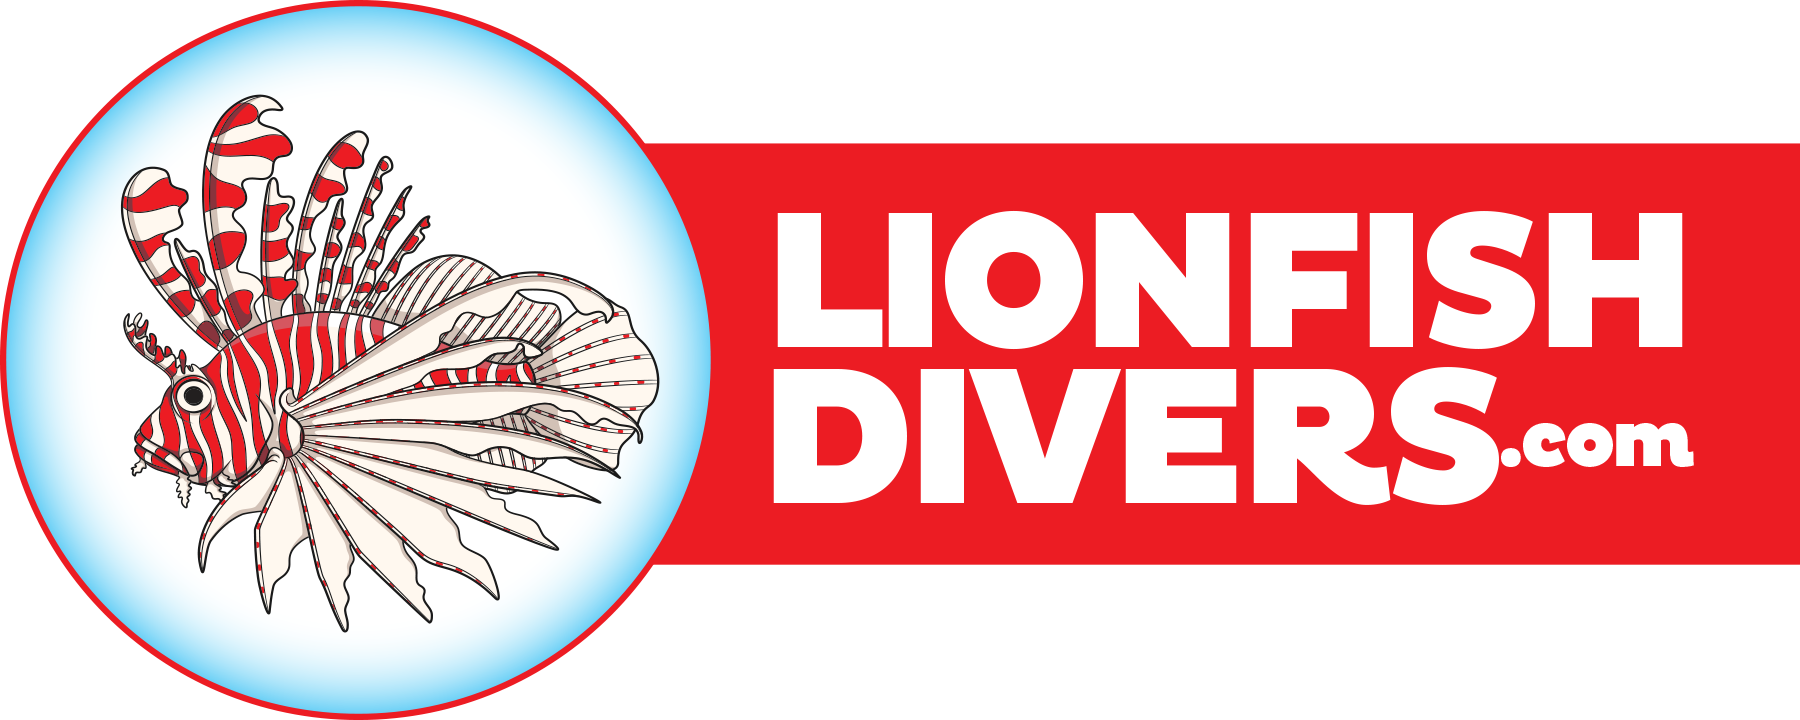 Lionfishdivers.com